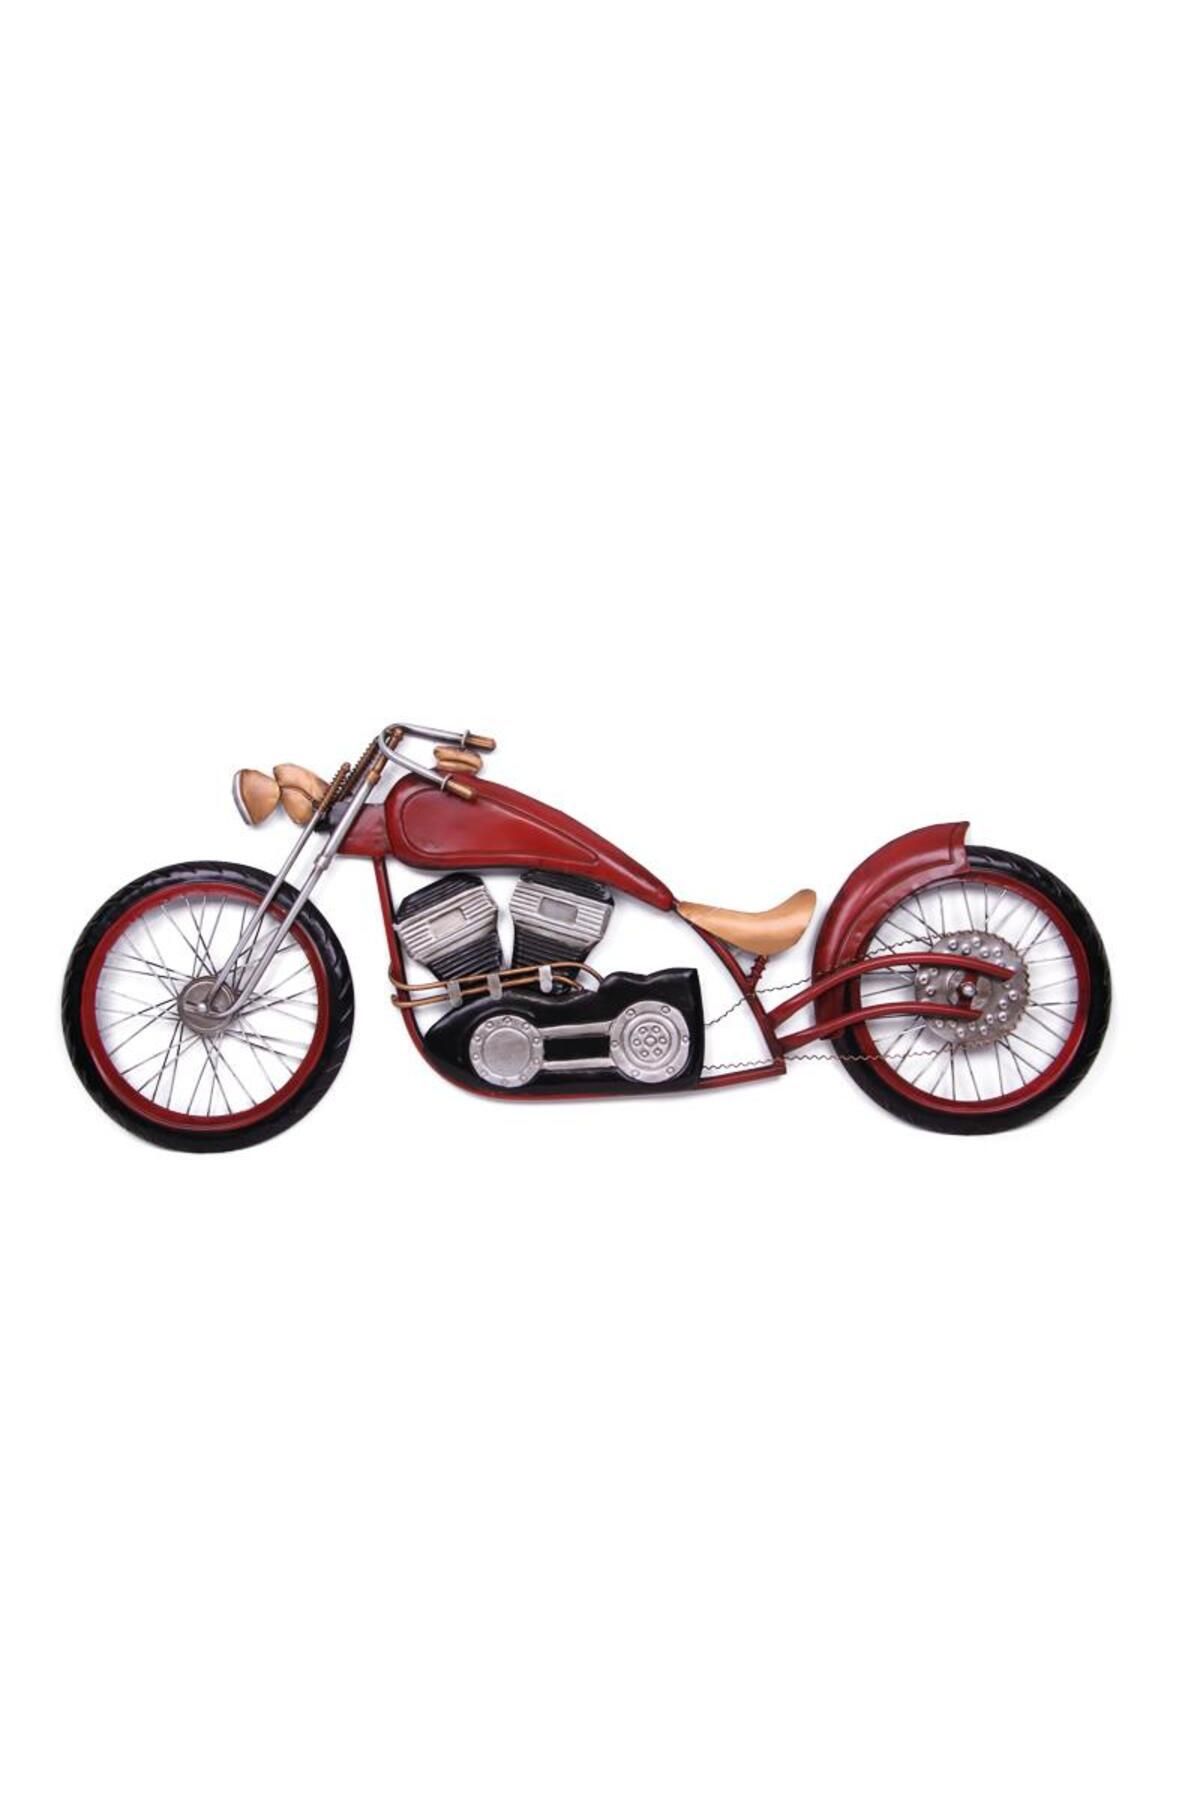 MasalUs Motorsiklet Pano Vintage Dekoratif Hediyelik